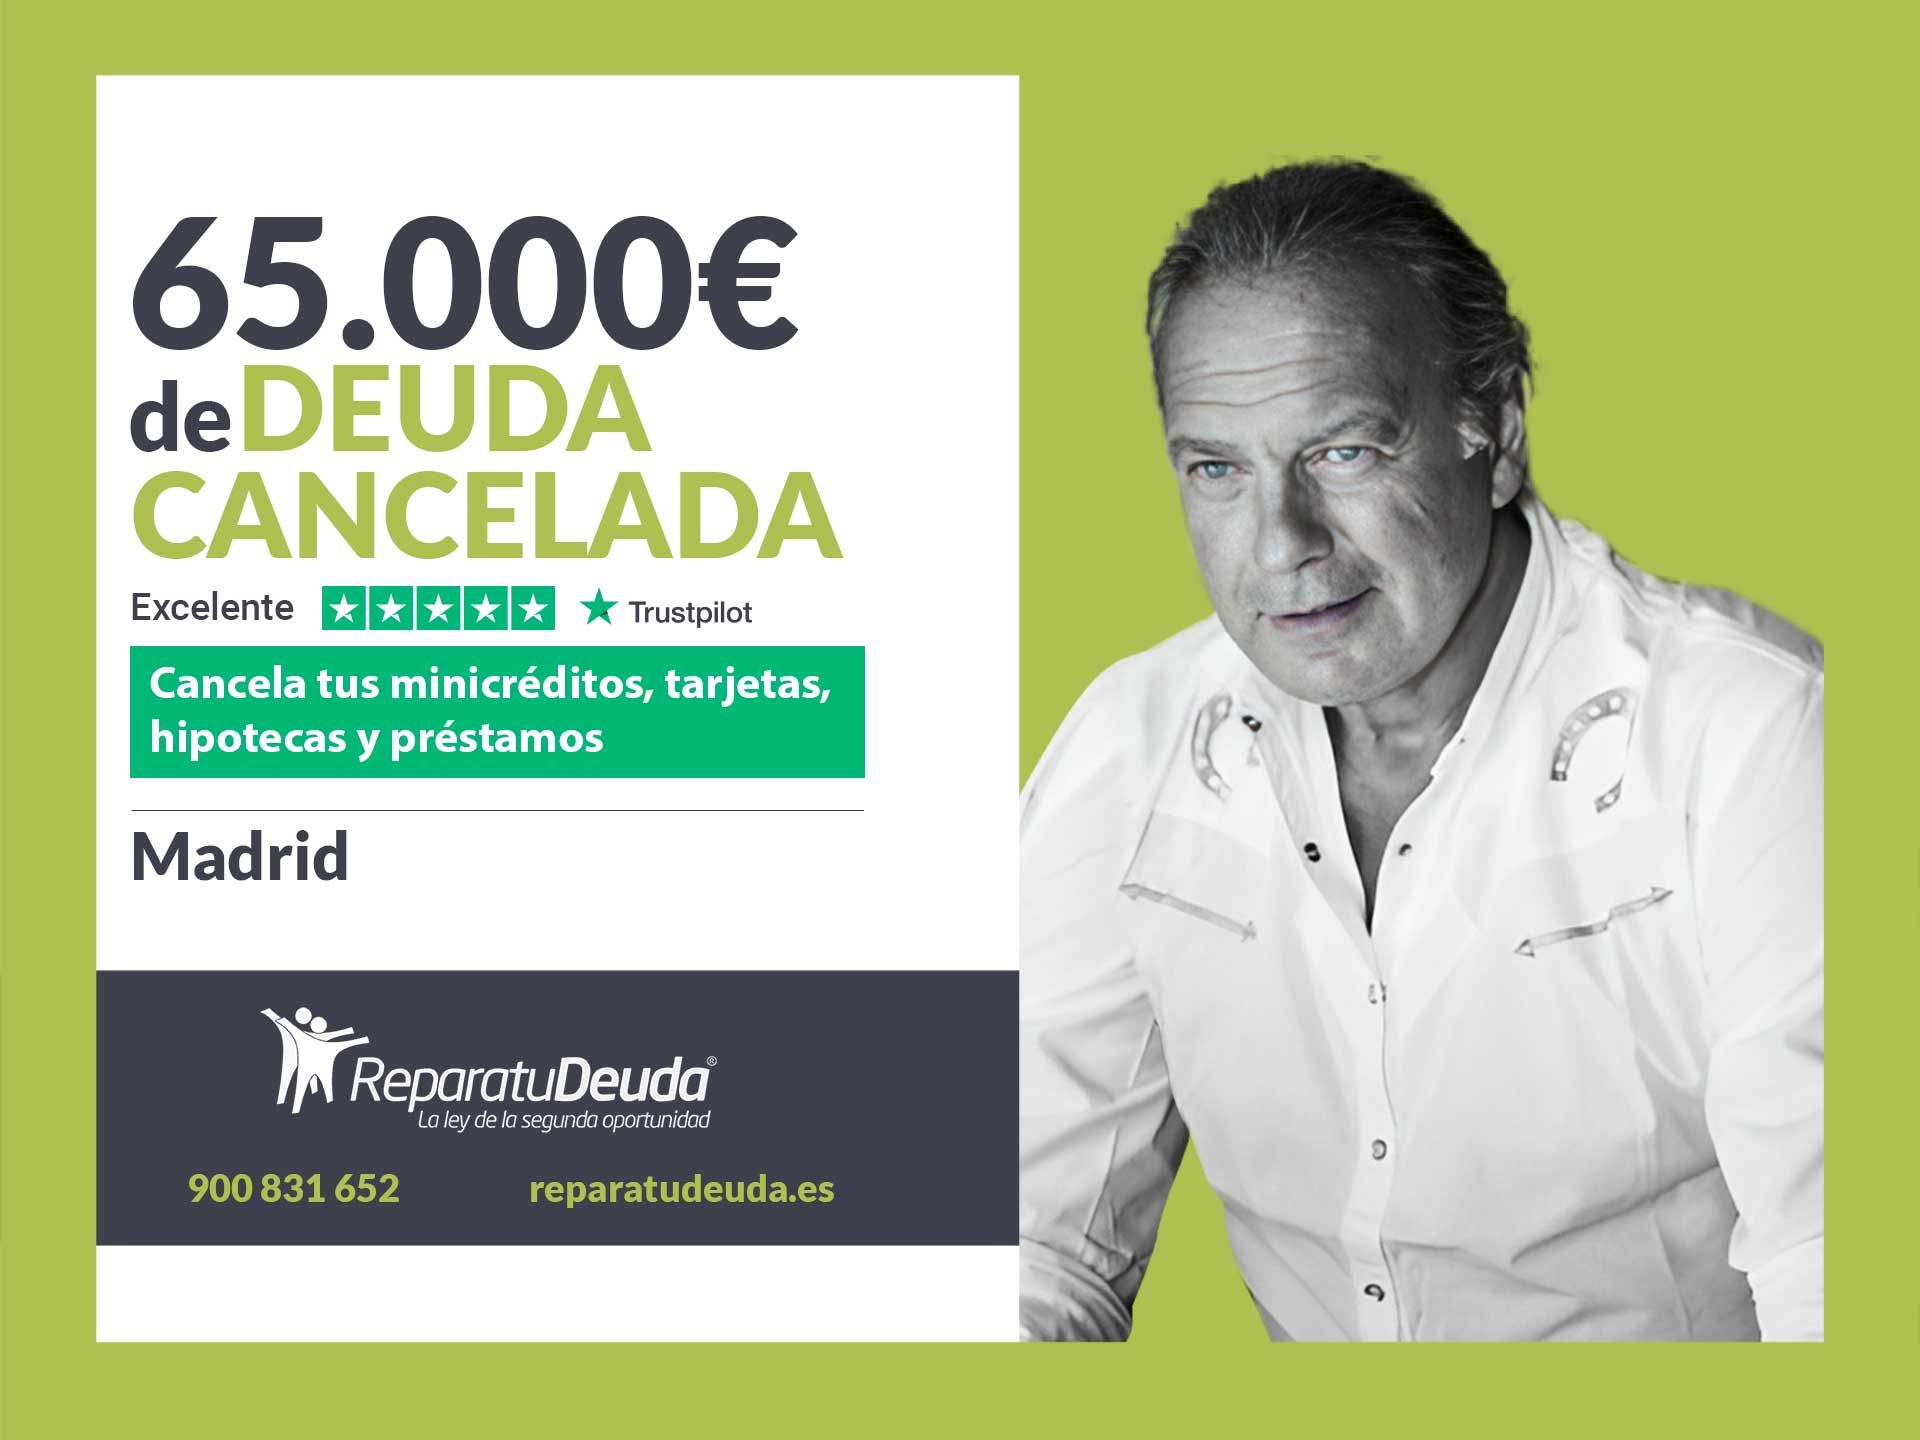 Repara tu Deuda Abogados cancela 65.000? en Madrid con la Ley de Segunda Oportunidad